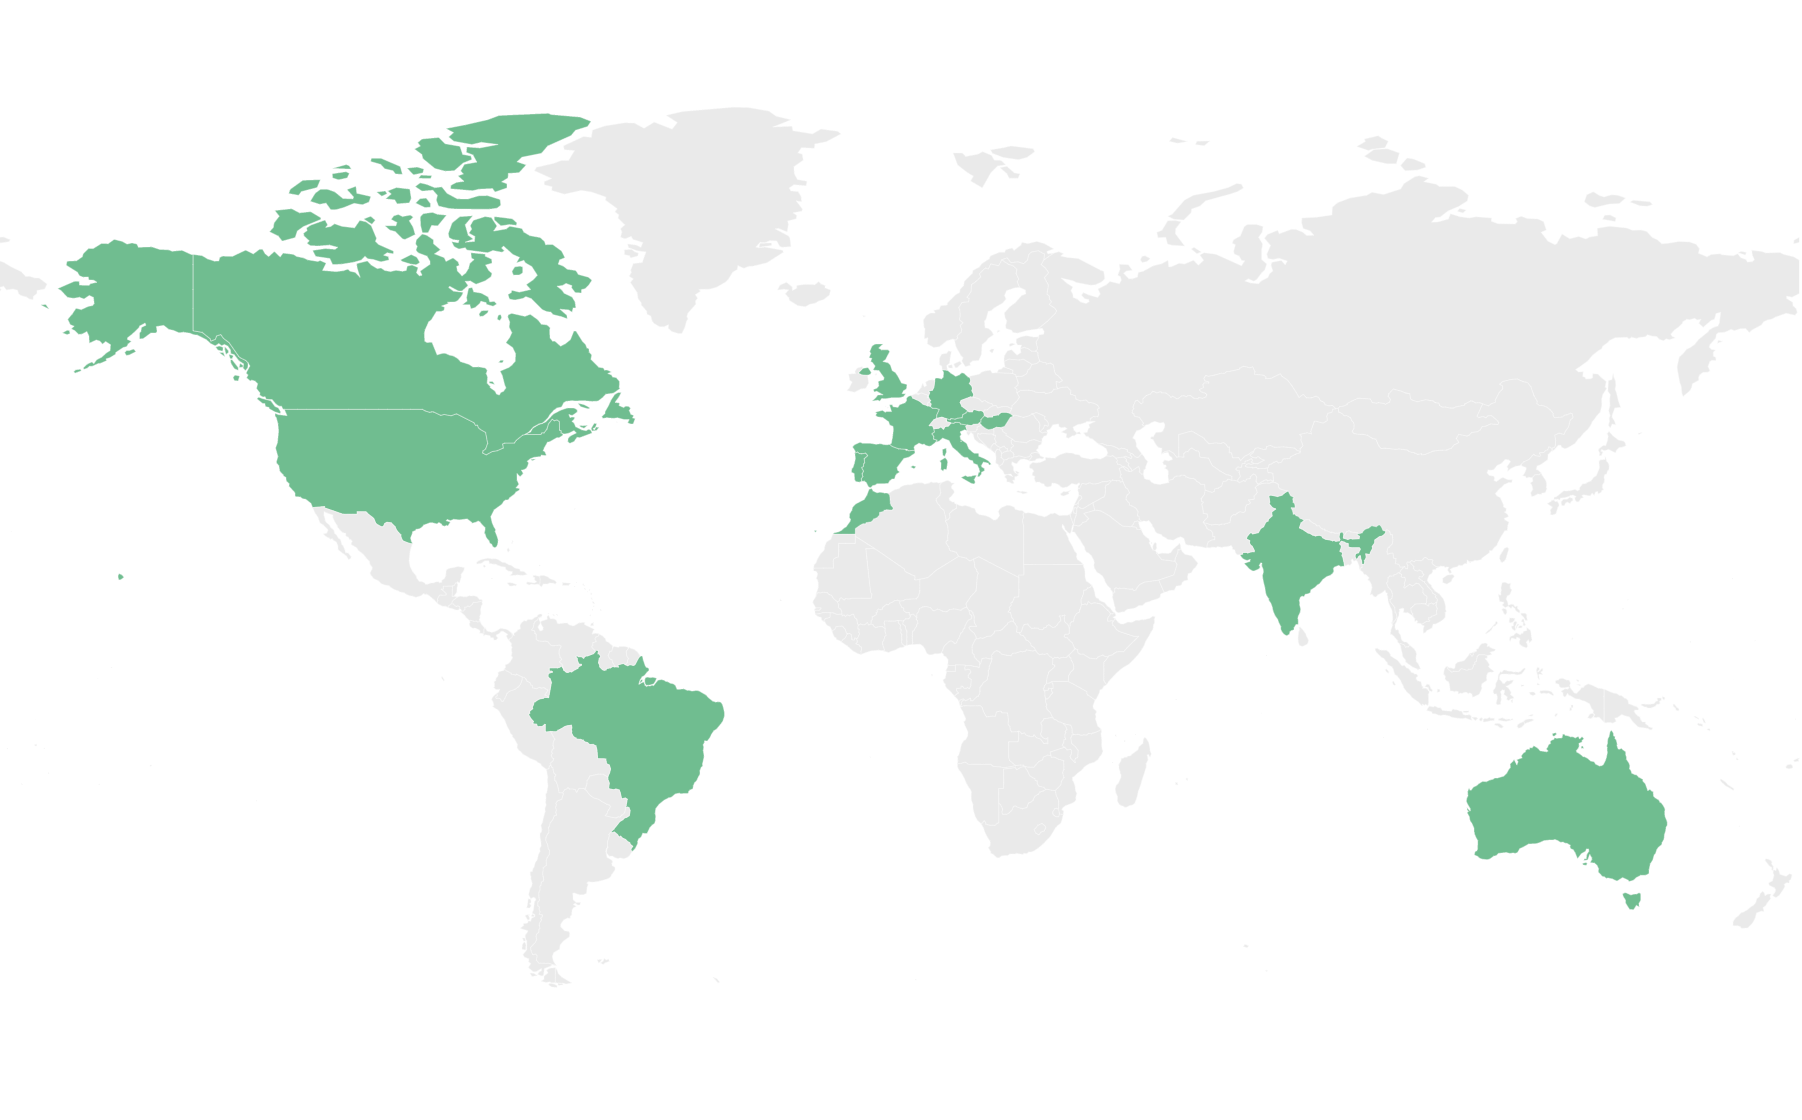 Mapa do mundo com países coloridos